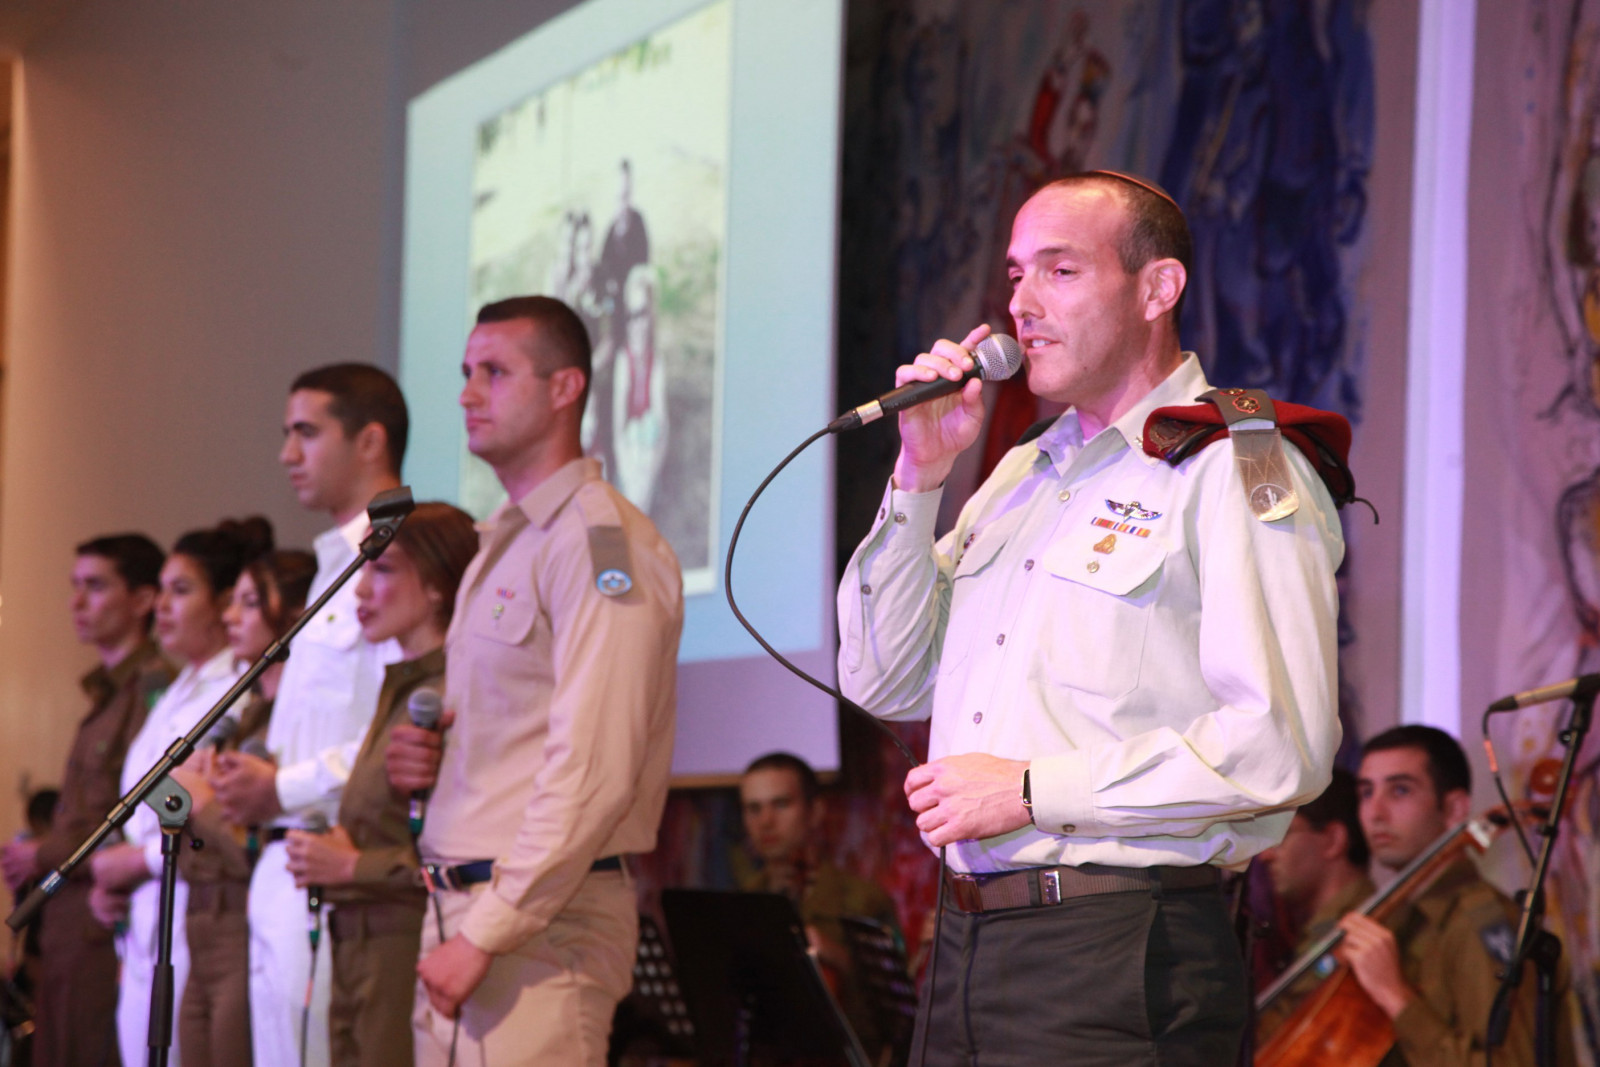 החזן הצבאי הראשי סא"ל שי אברמסון באירוע ציון עשור ללבנון השנייה במשכן הכנסת. צילום: יצחק הררי, דוברות הכנסת